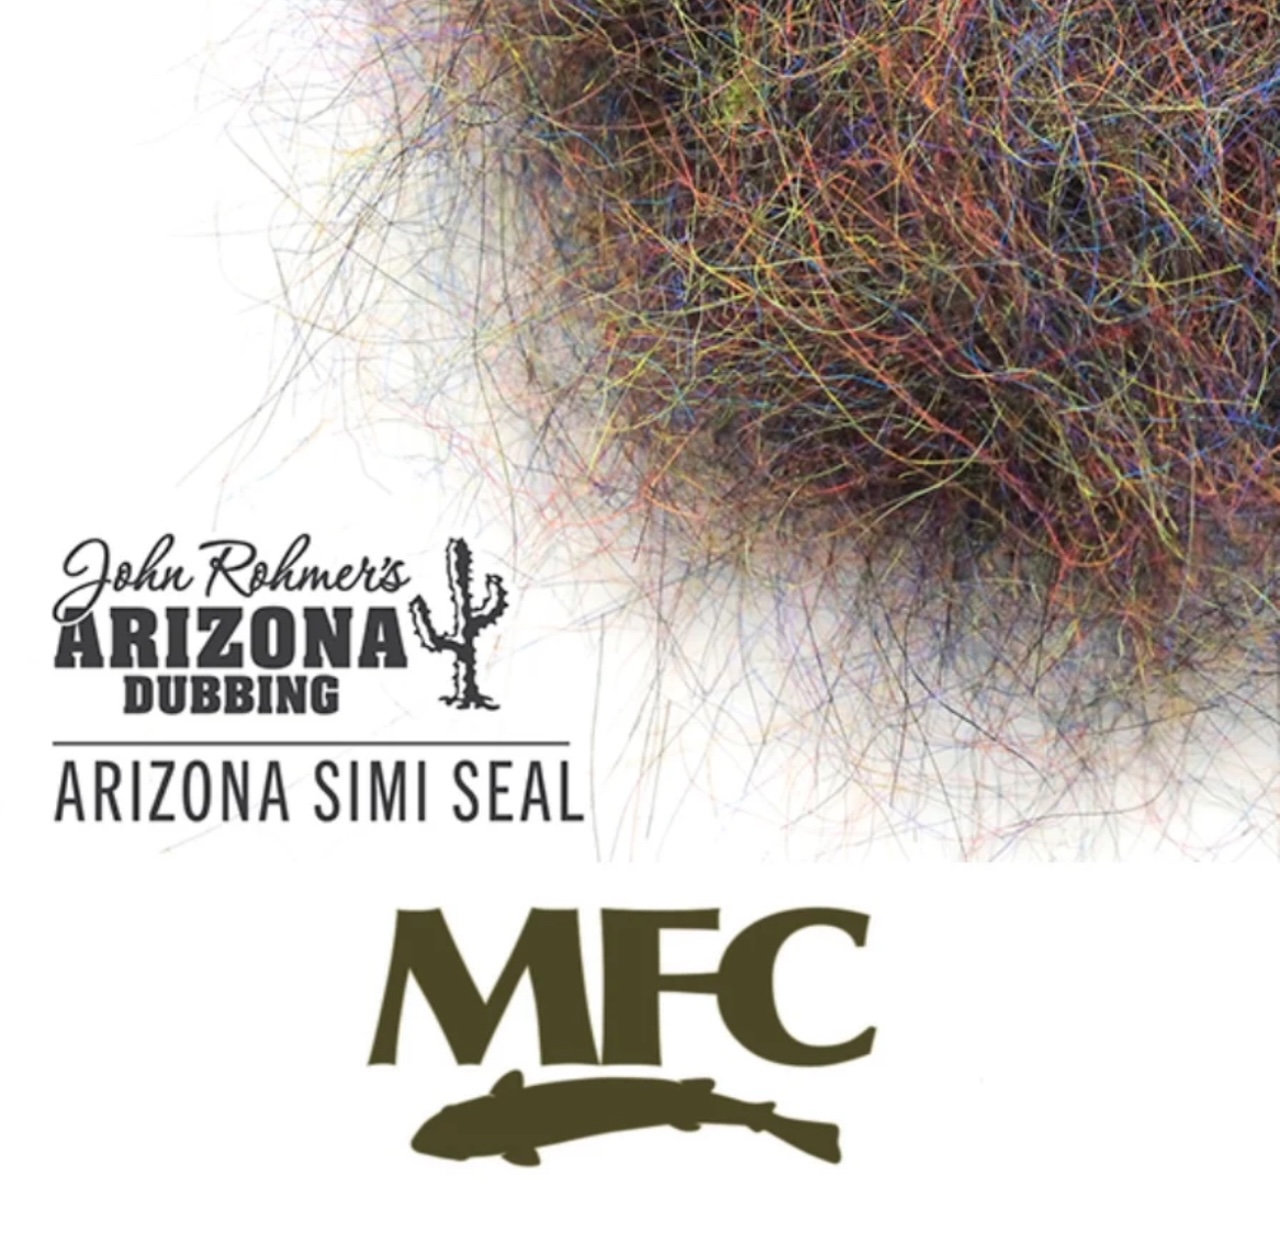 Montana Fly Company (MFC) Arizona Simi Seal Dubbing